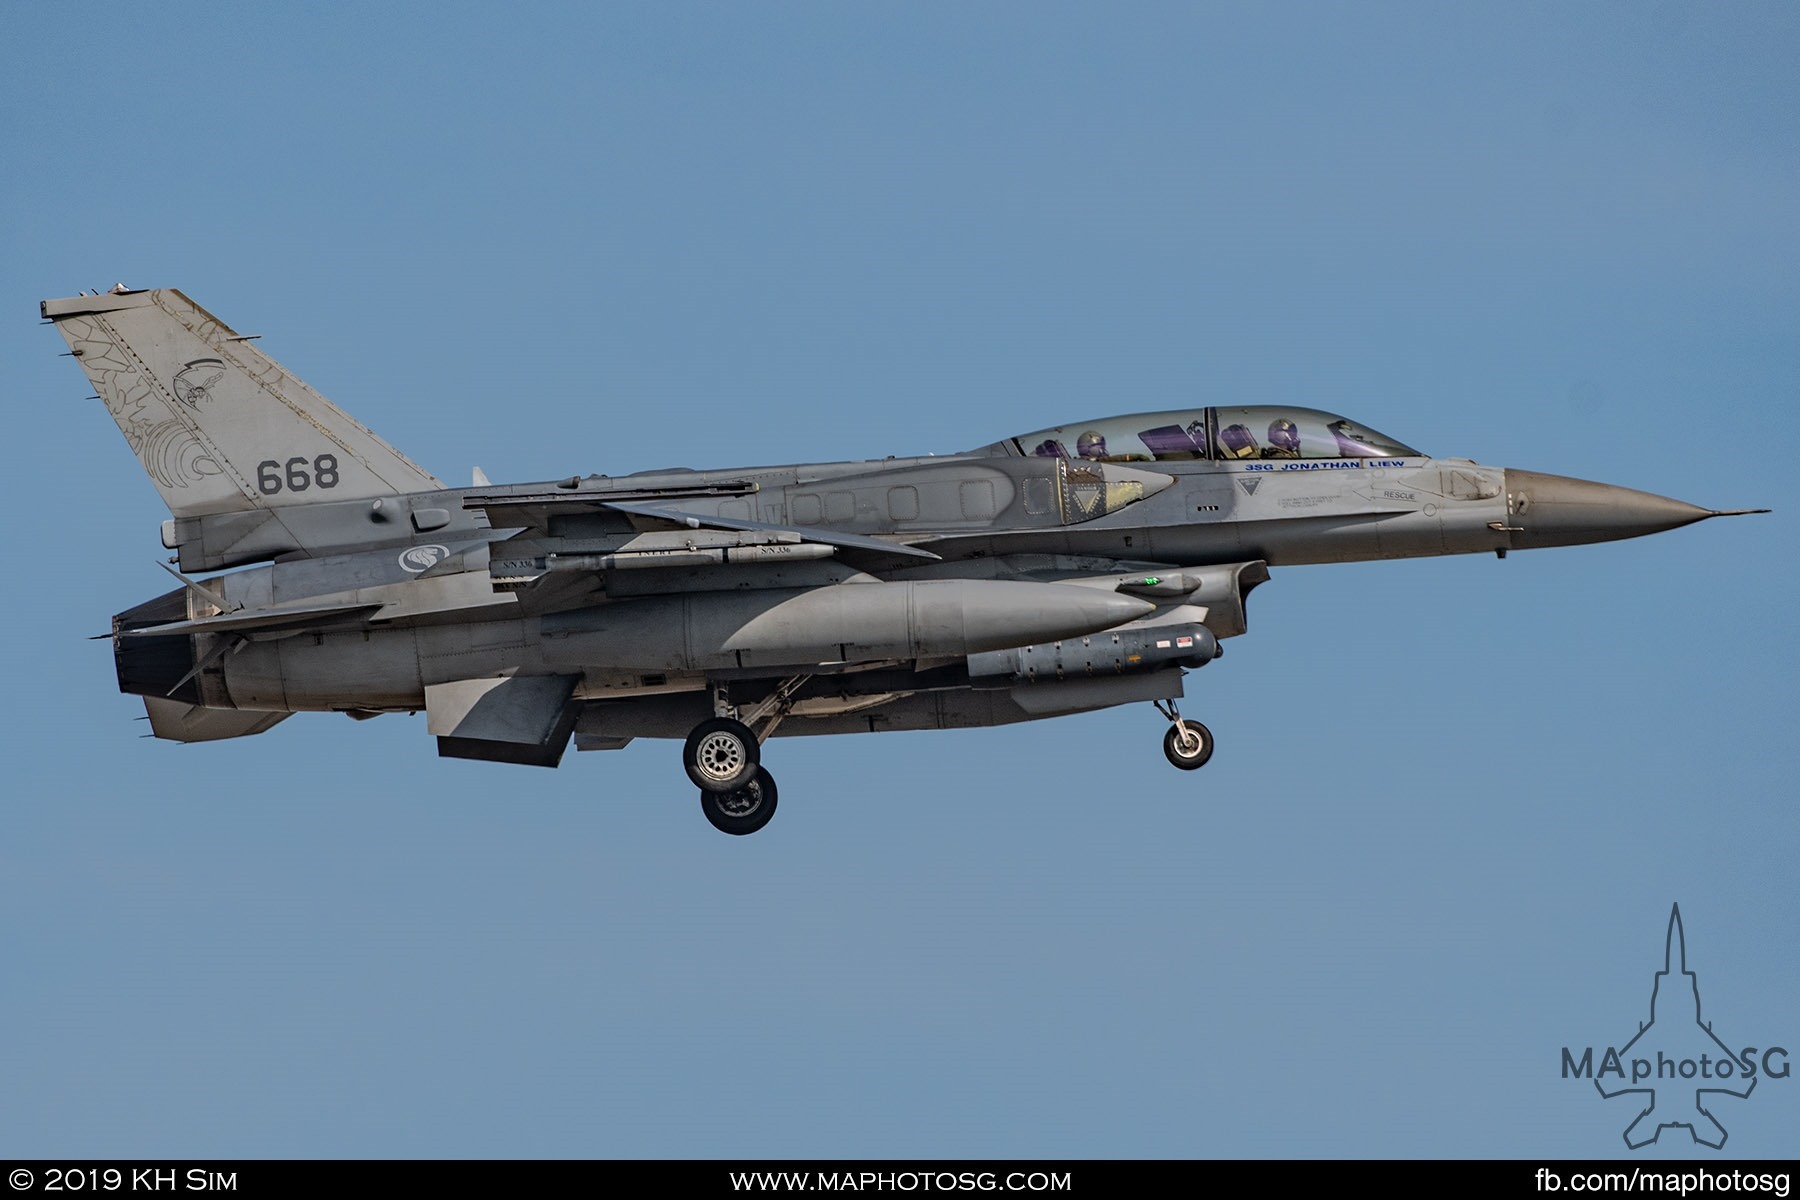 145 SQN F-16D+ (668)